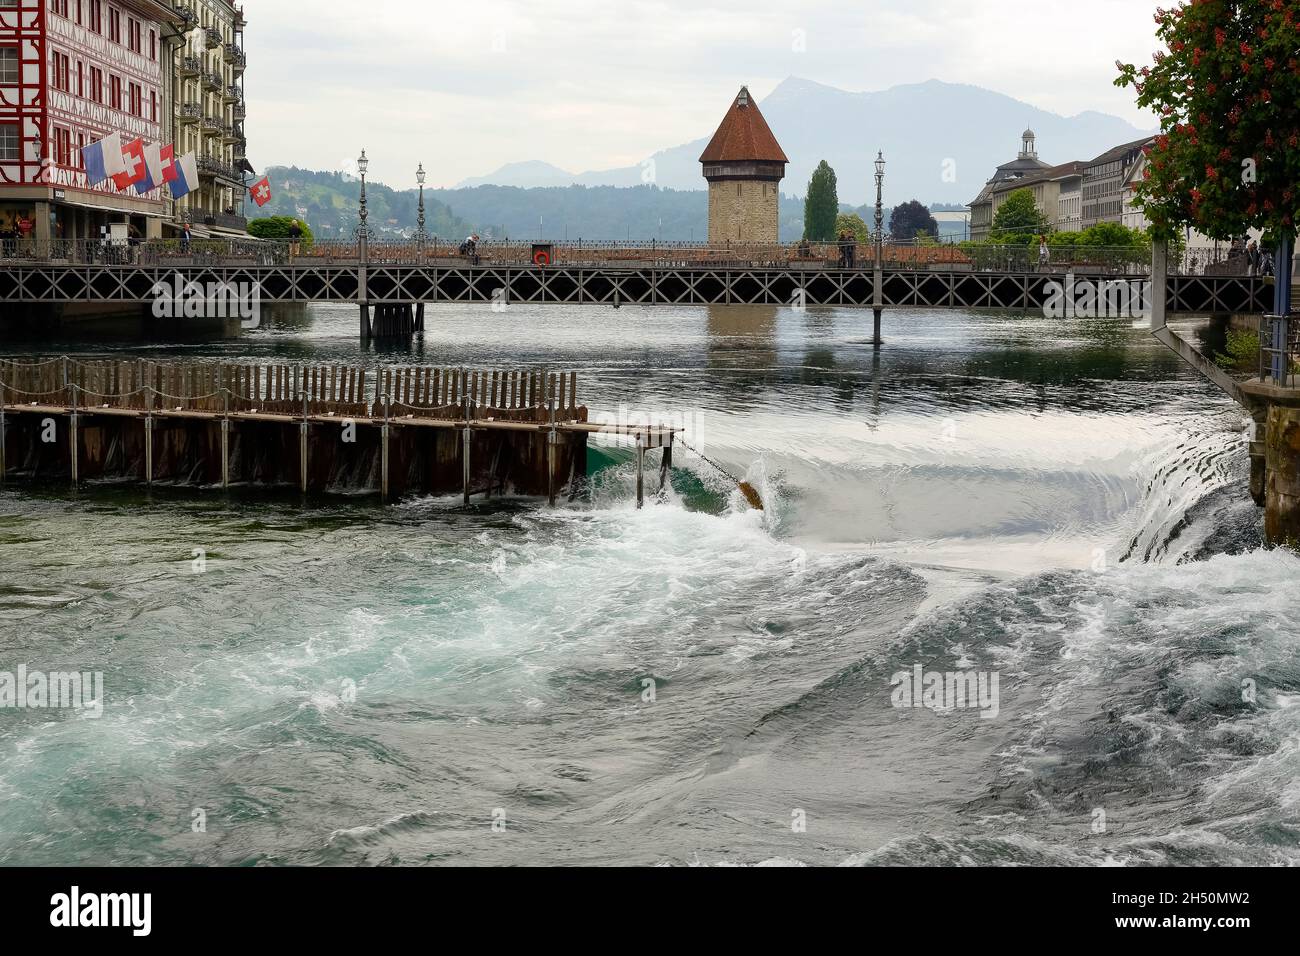 Lucerna, Svizzera - 11 maggio 2016: Diga dell'ago nel fiume Reuss. Weir è stato progettato per l'uso di sottili aghi di legno che possono essere aggiunti o rimossi da ha Foto Stock